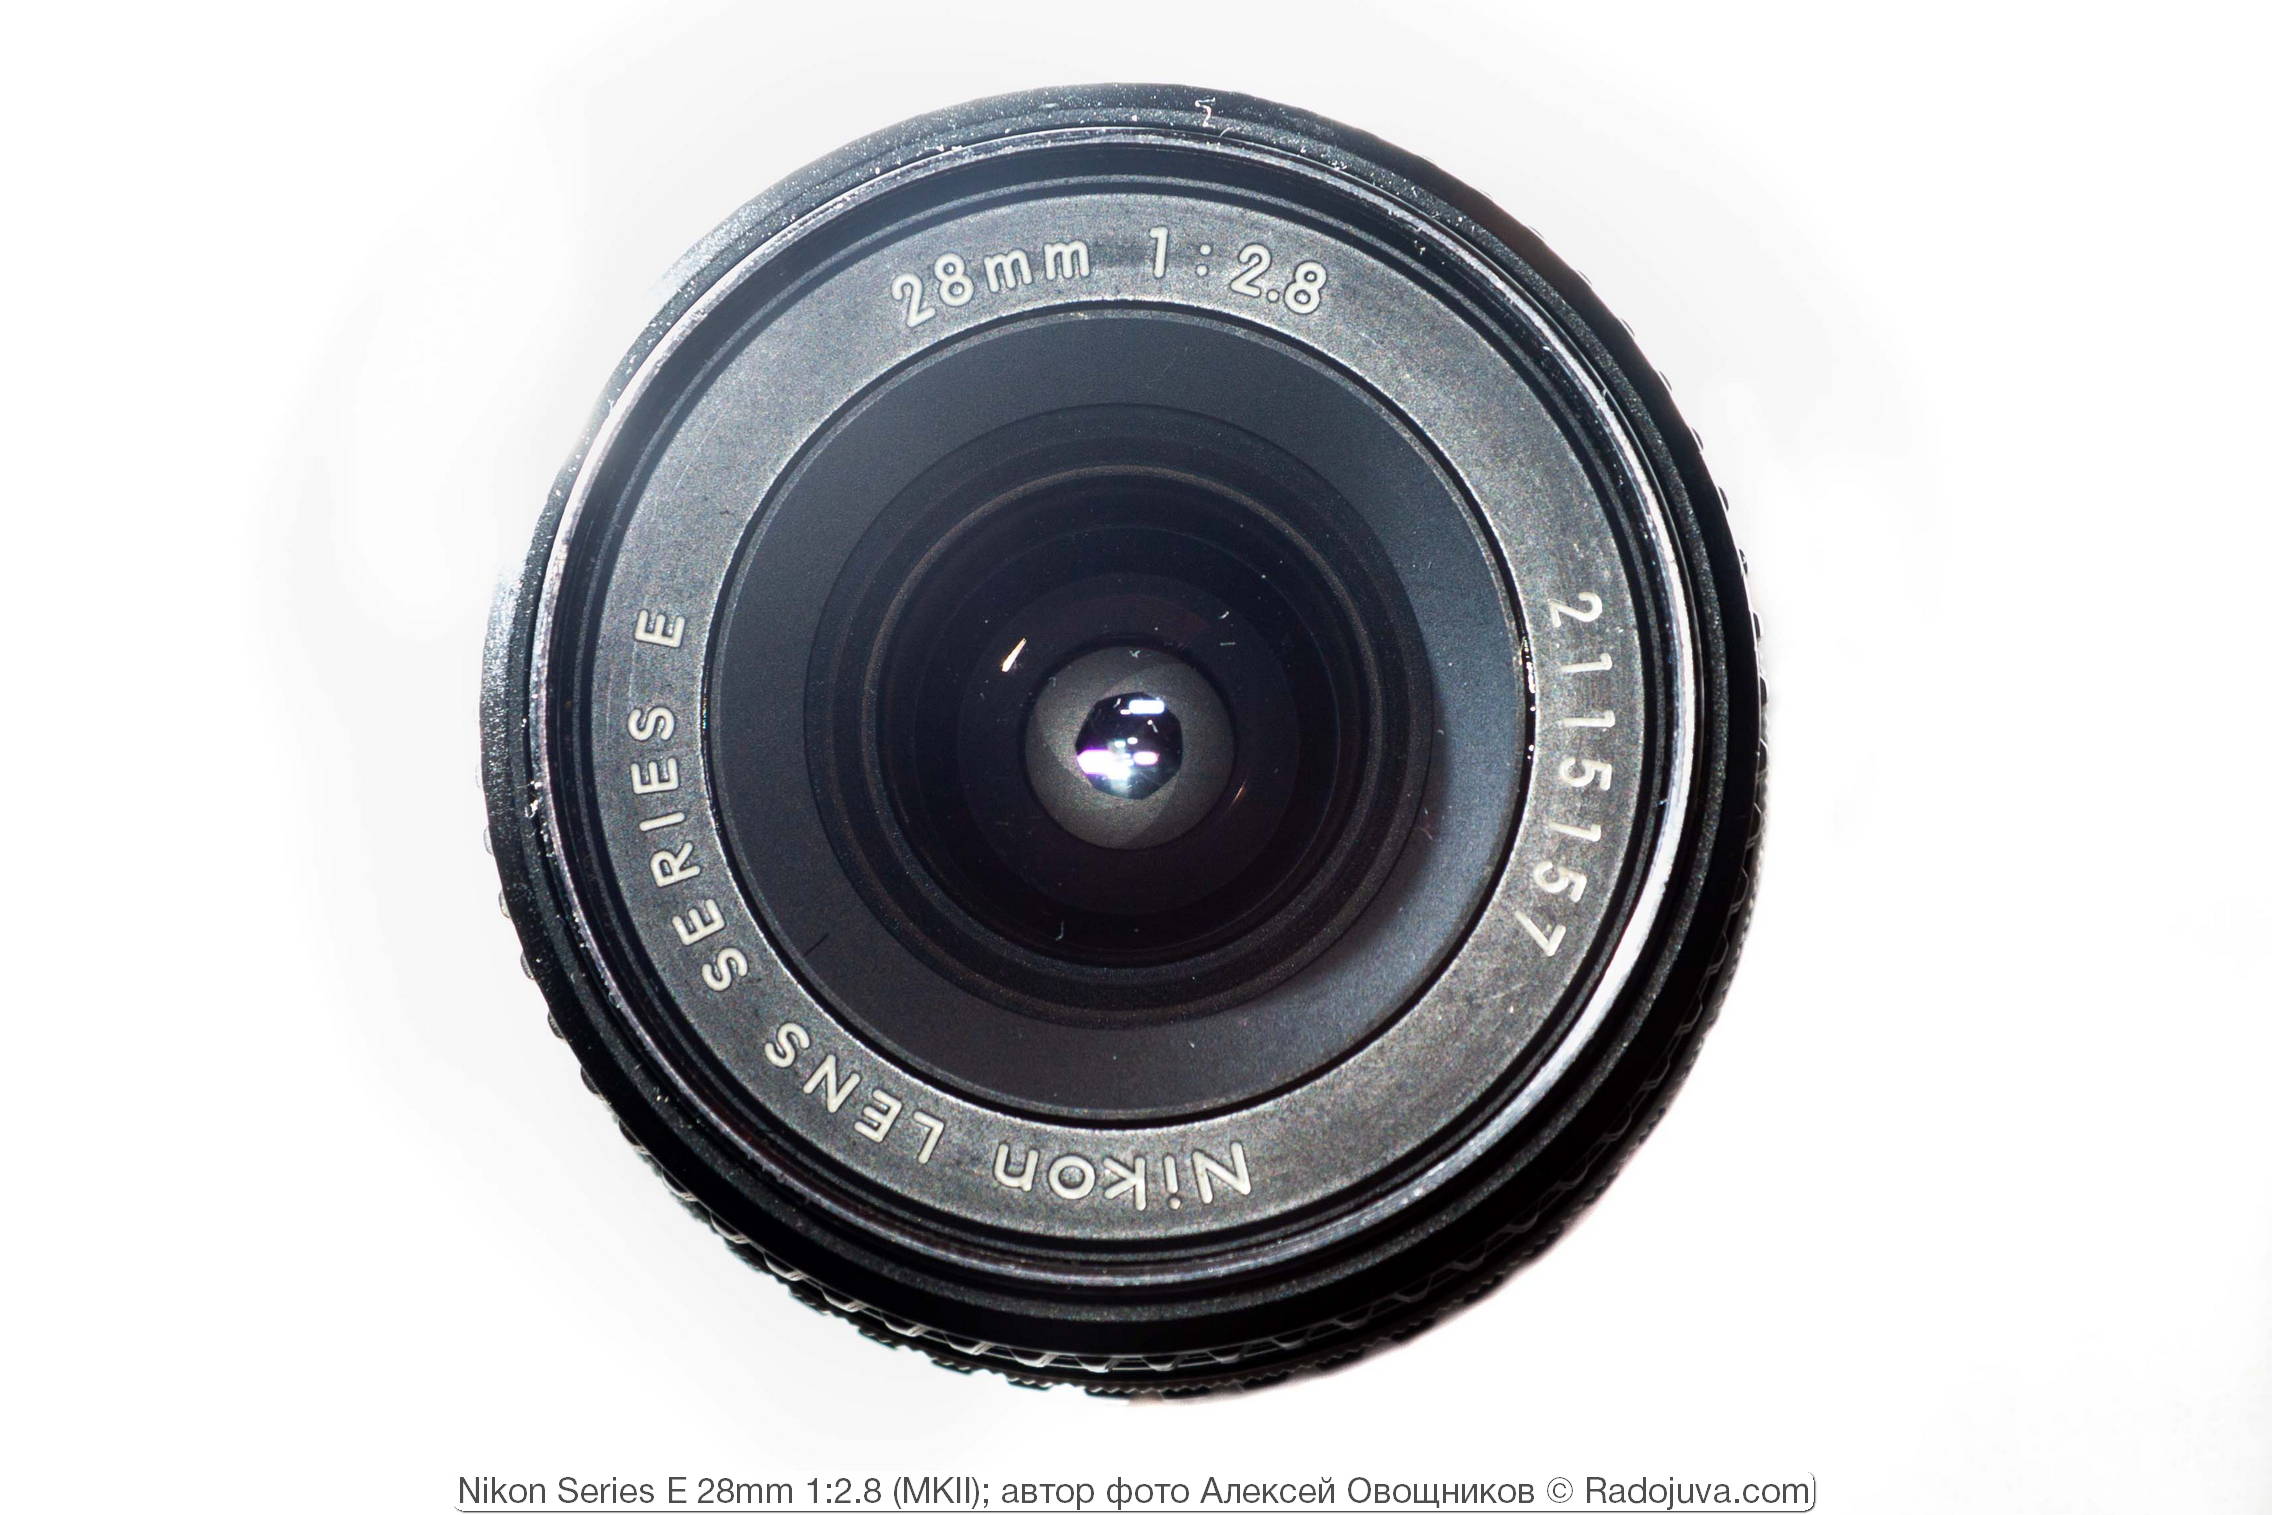 Nikon Serie E 28mm 1:2.8 MKII